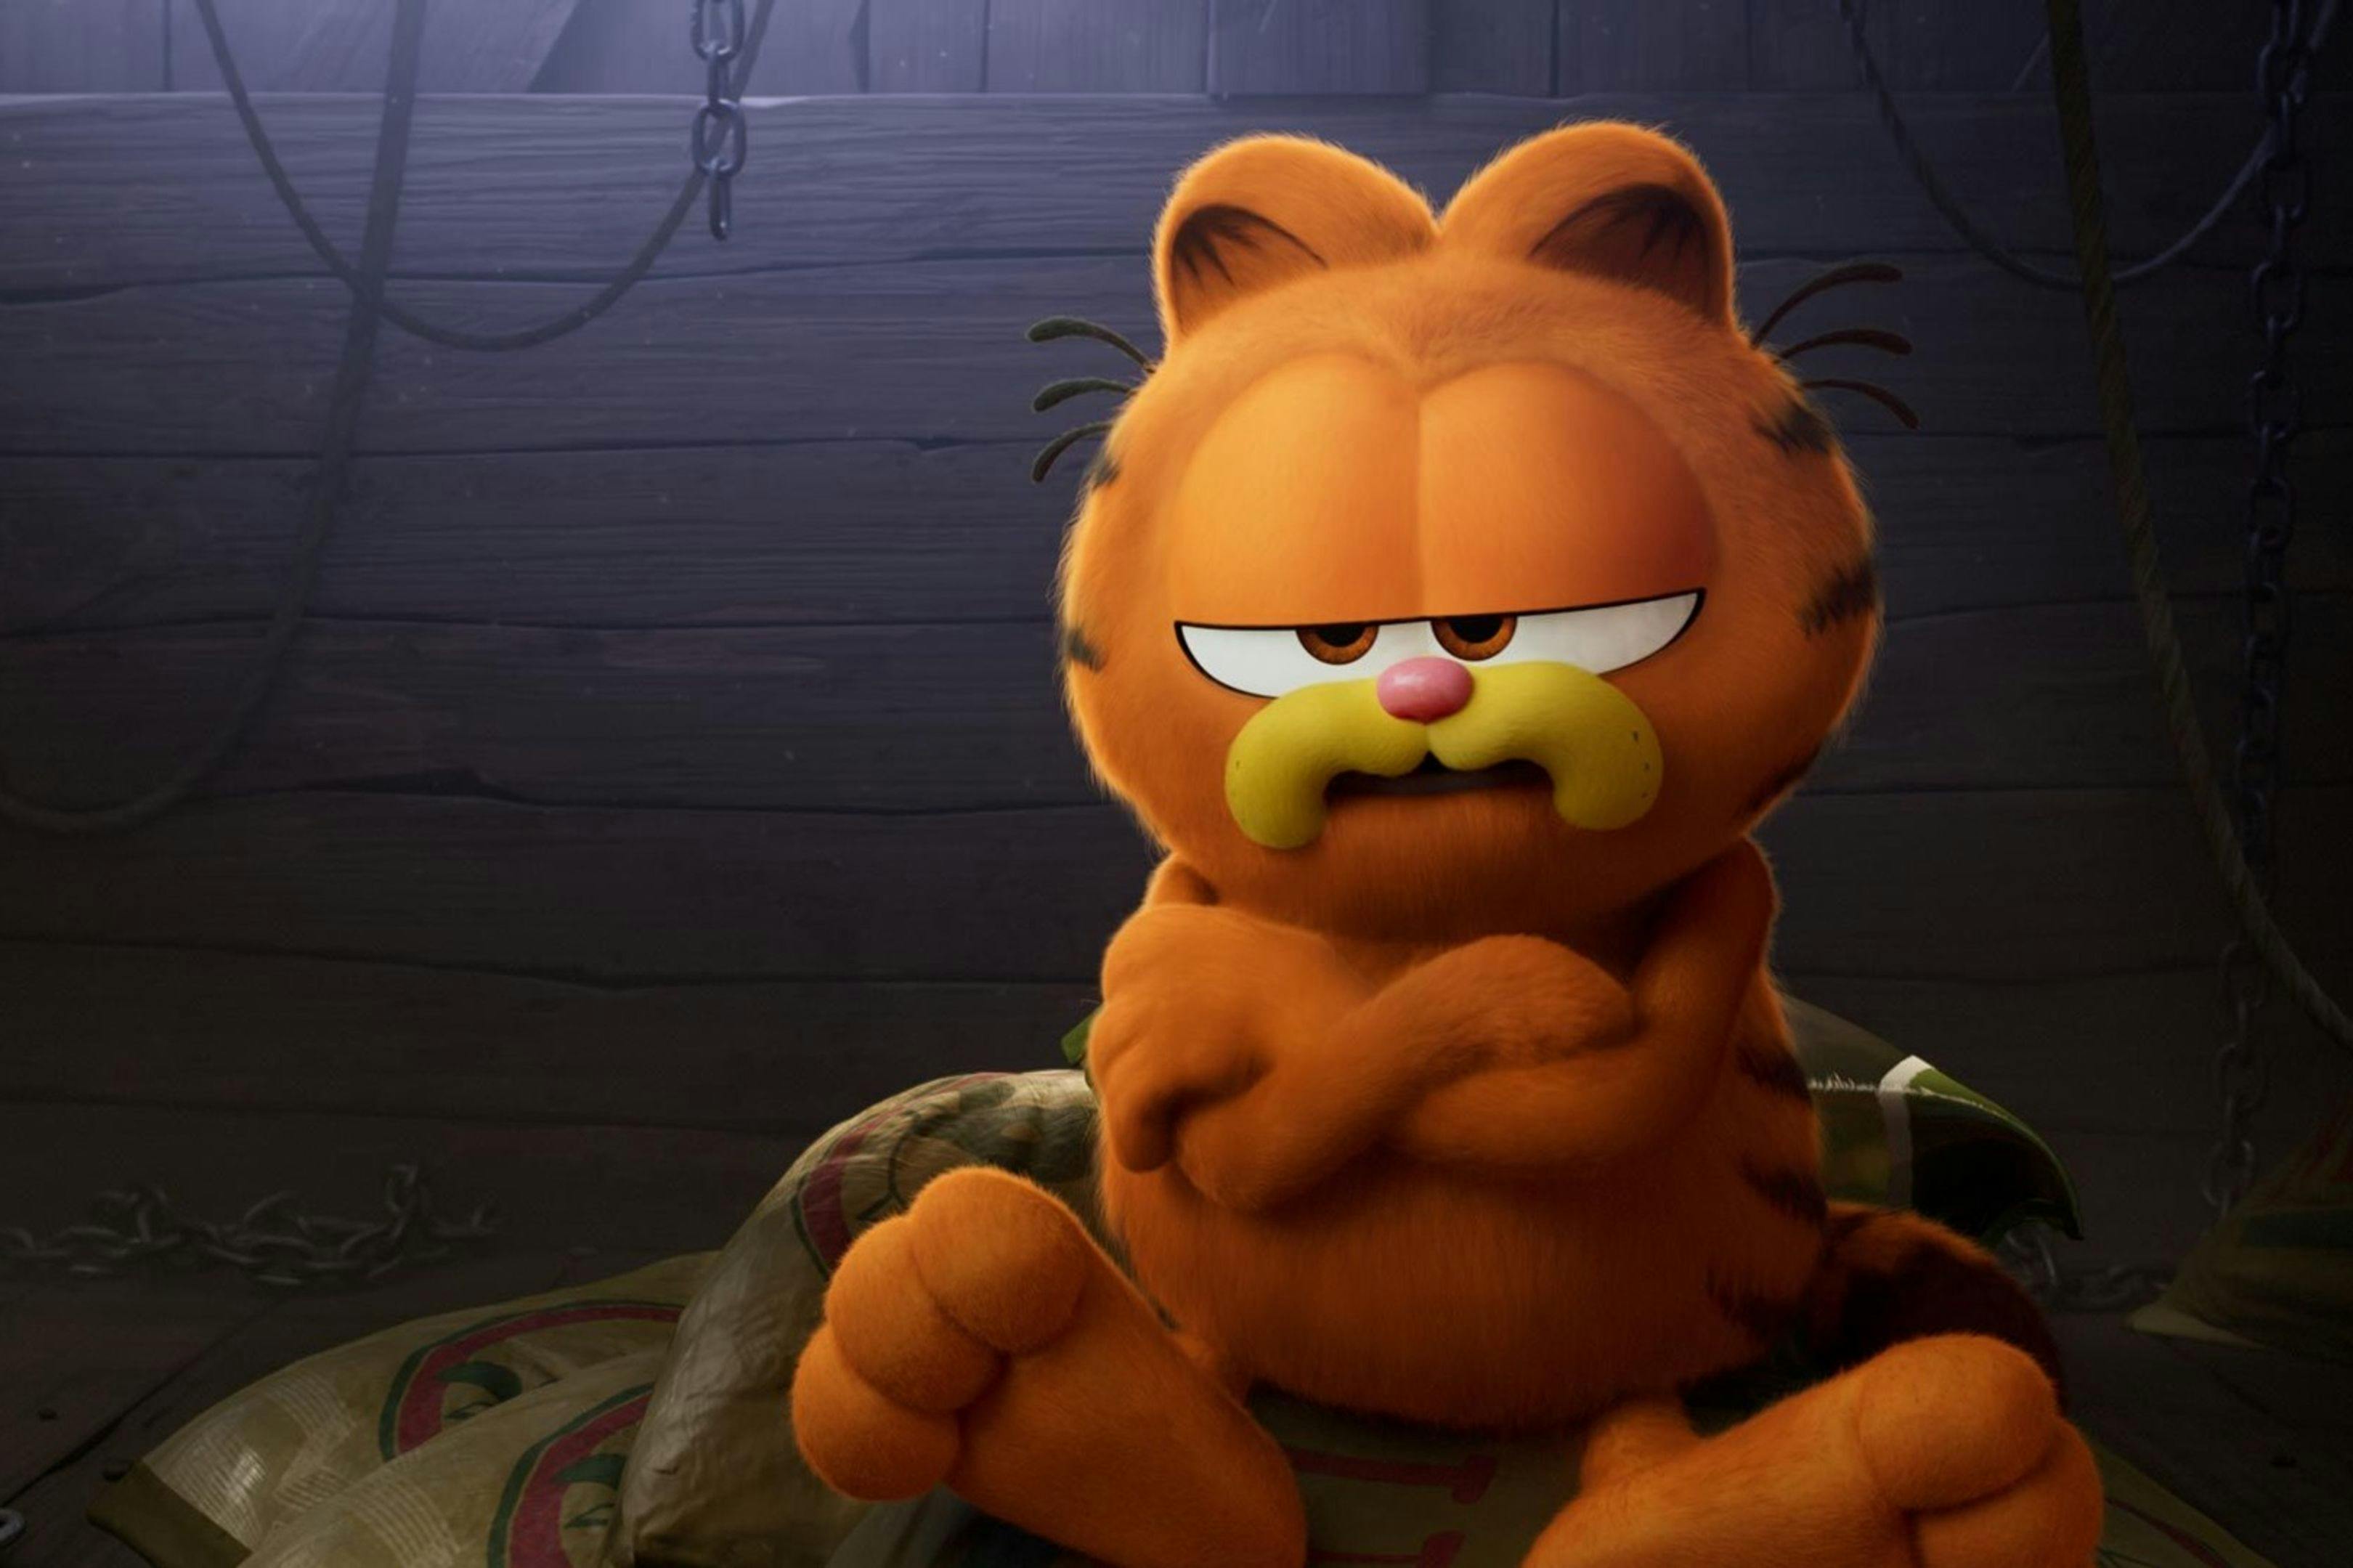 Fotograma promocional de 'Garfield. La película' con su gato protagonista de brazos cruzados y malhumorado